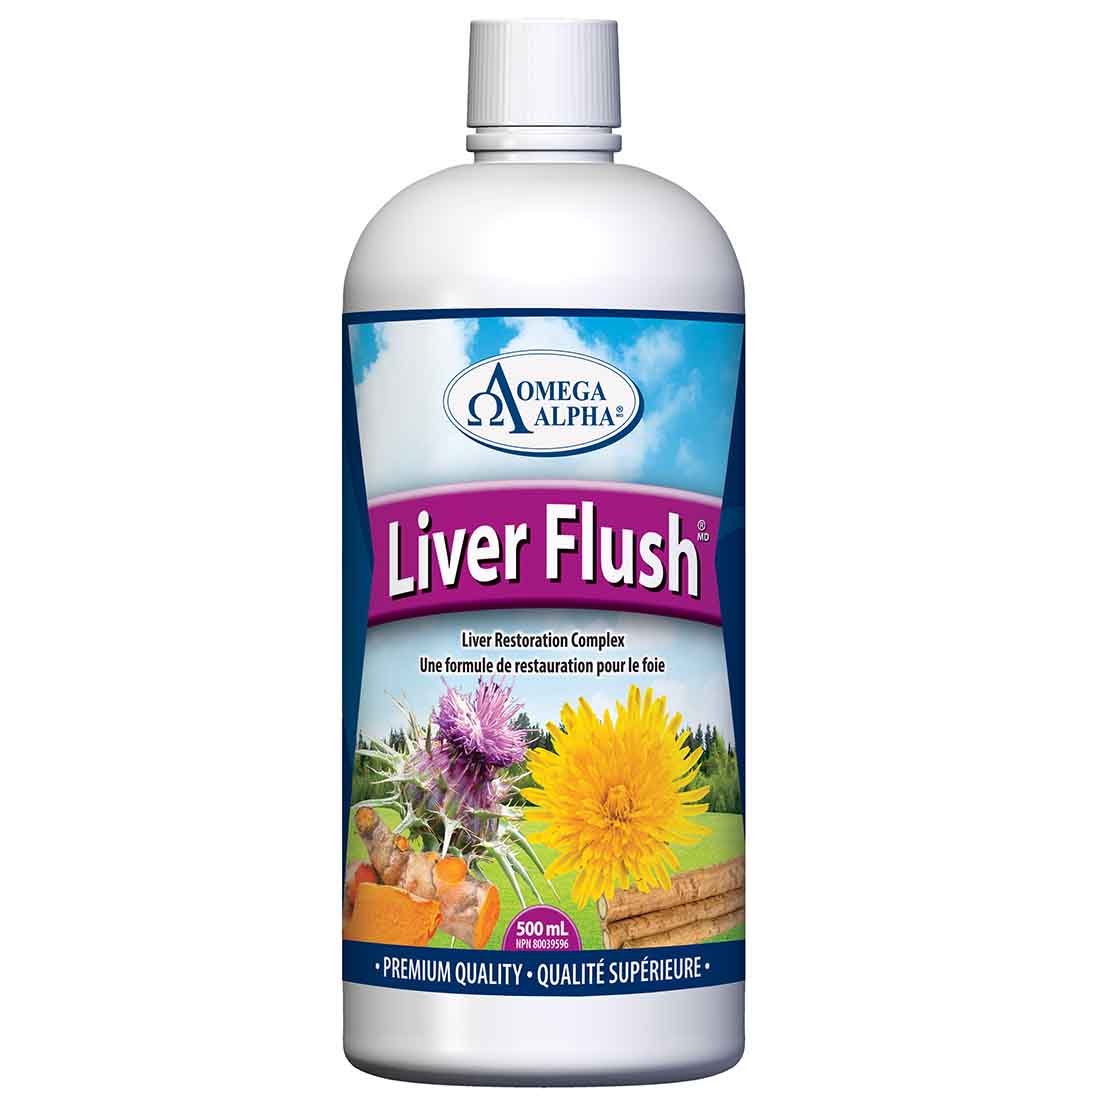 Omega Alpha Liver Flush (Liver Cleanse Formula), 500ml